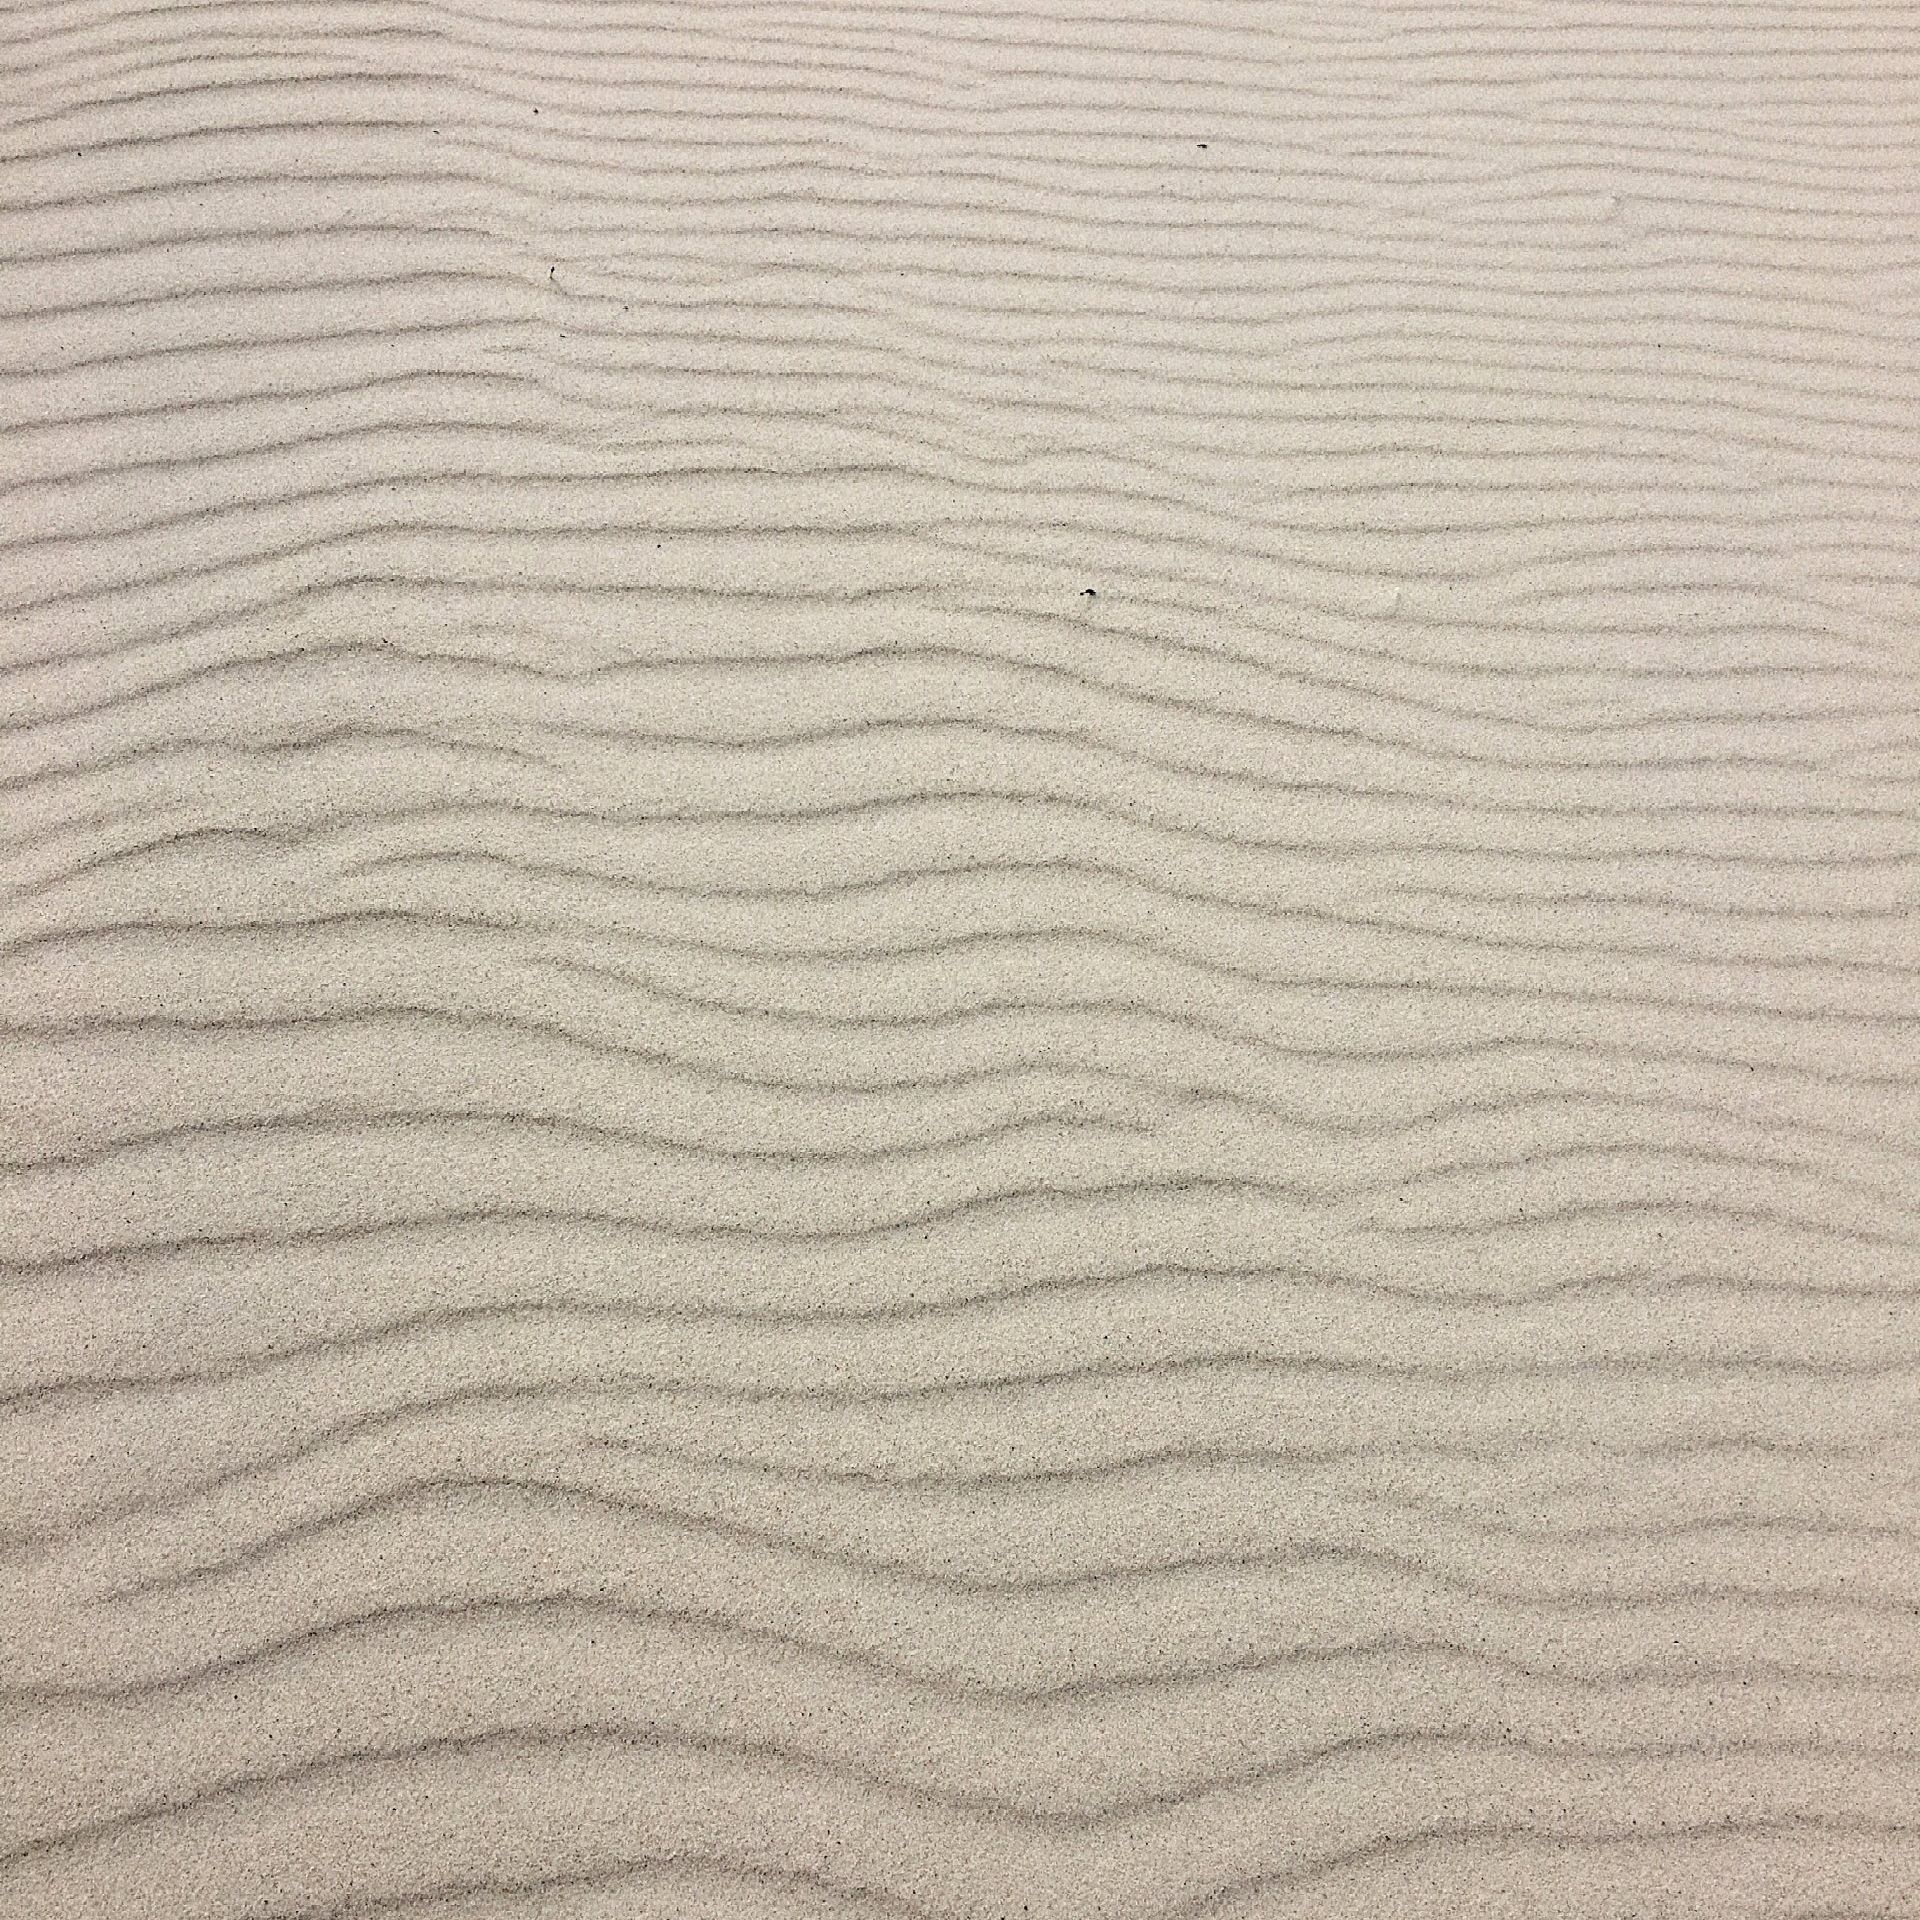 Een close-up van een zandstrand met golven in het zand.